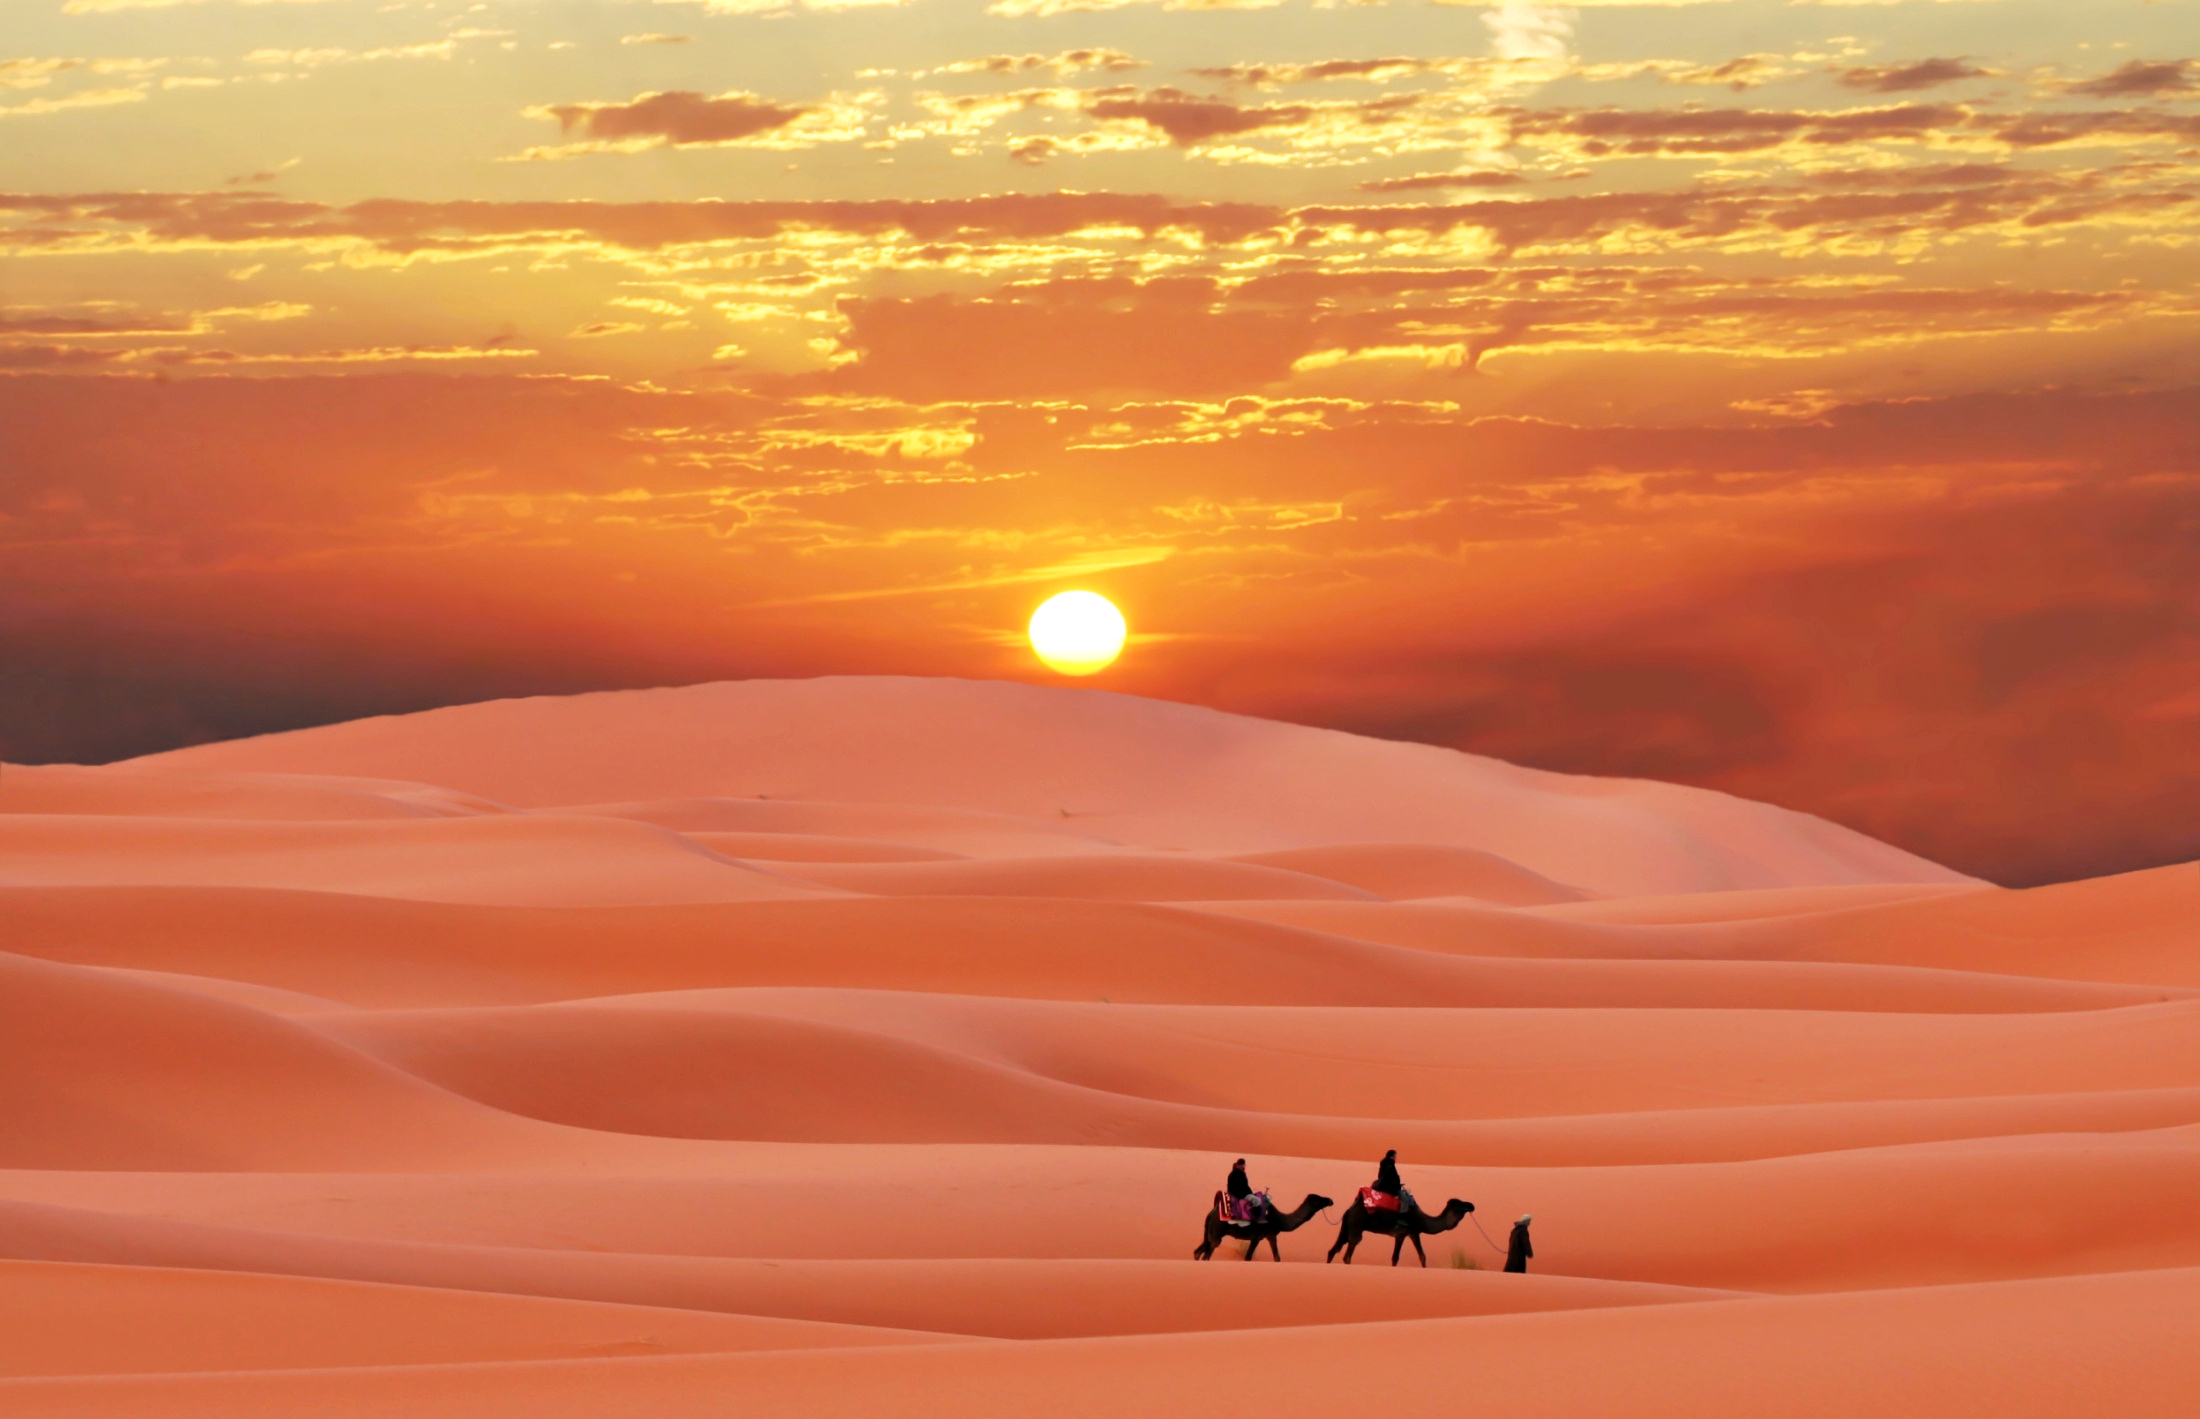 Картинка: Пустыня, пески, дюна, барханы, закат, небо, верблюды, всадники